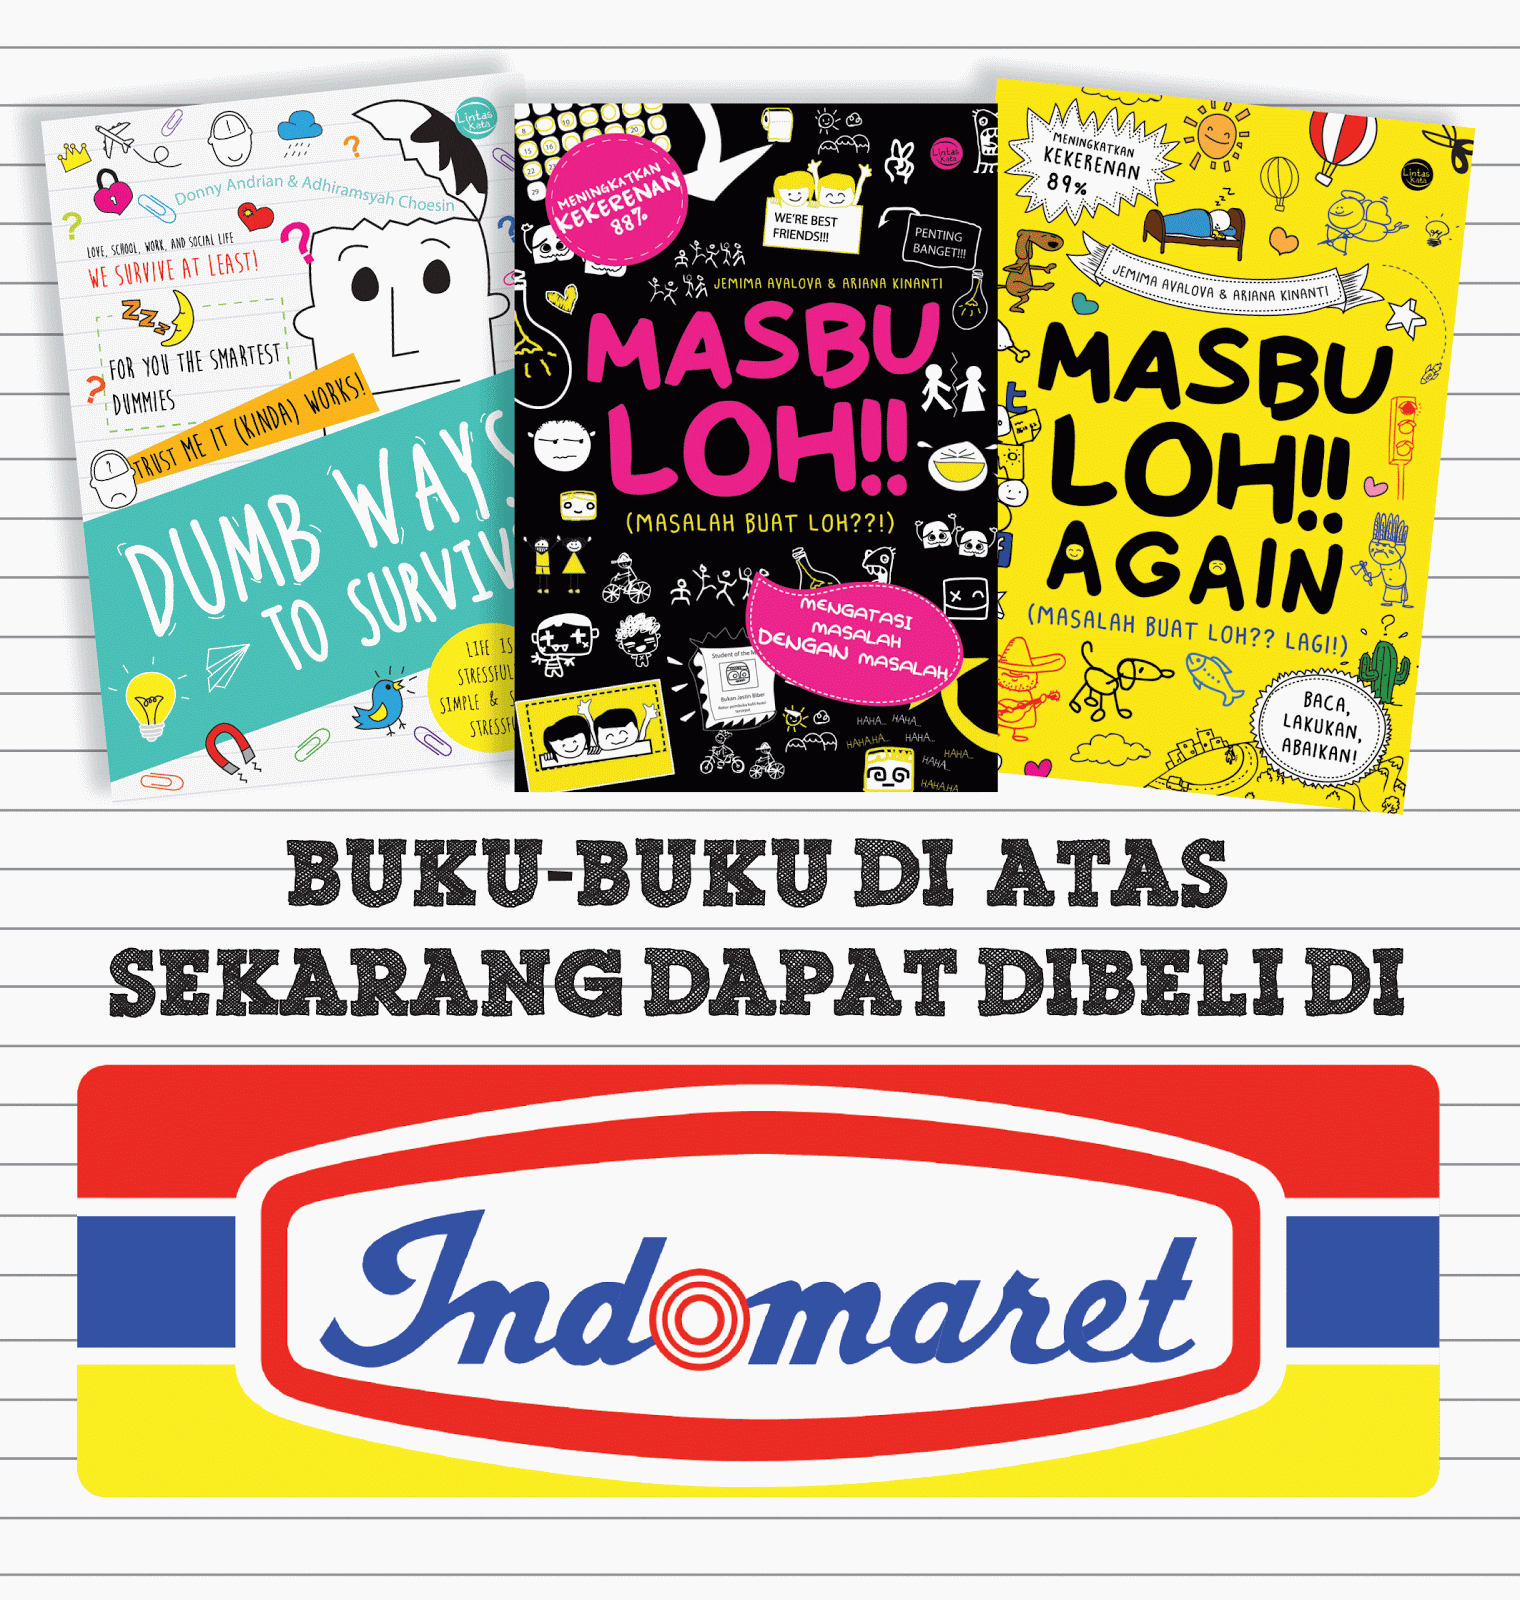 Sekarang beli buku bisa di Indomaret!